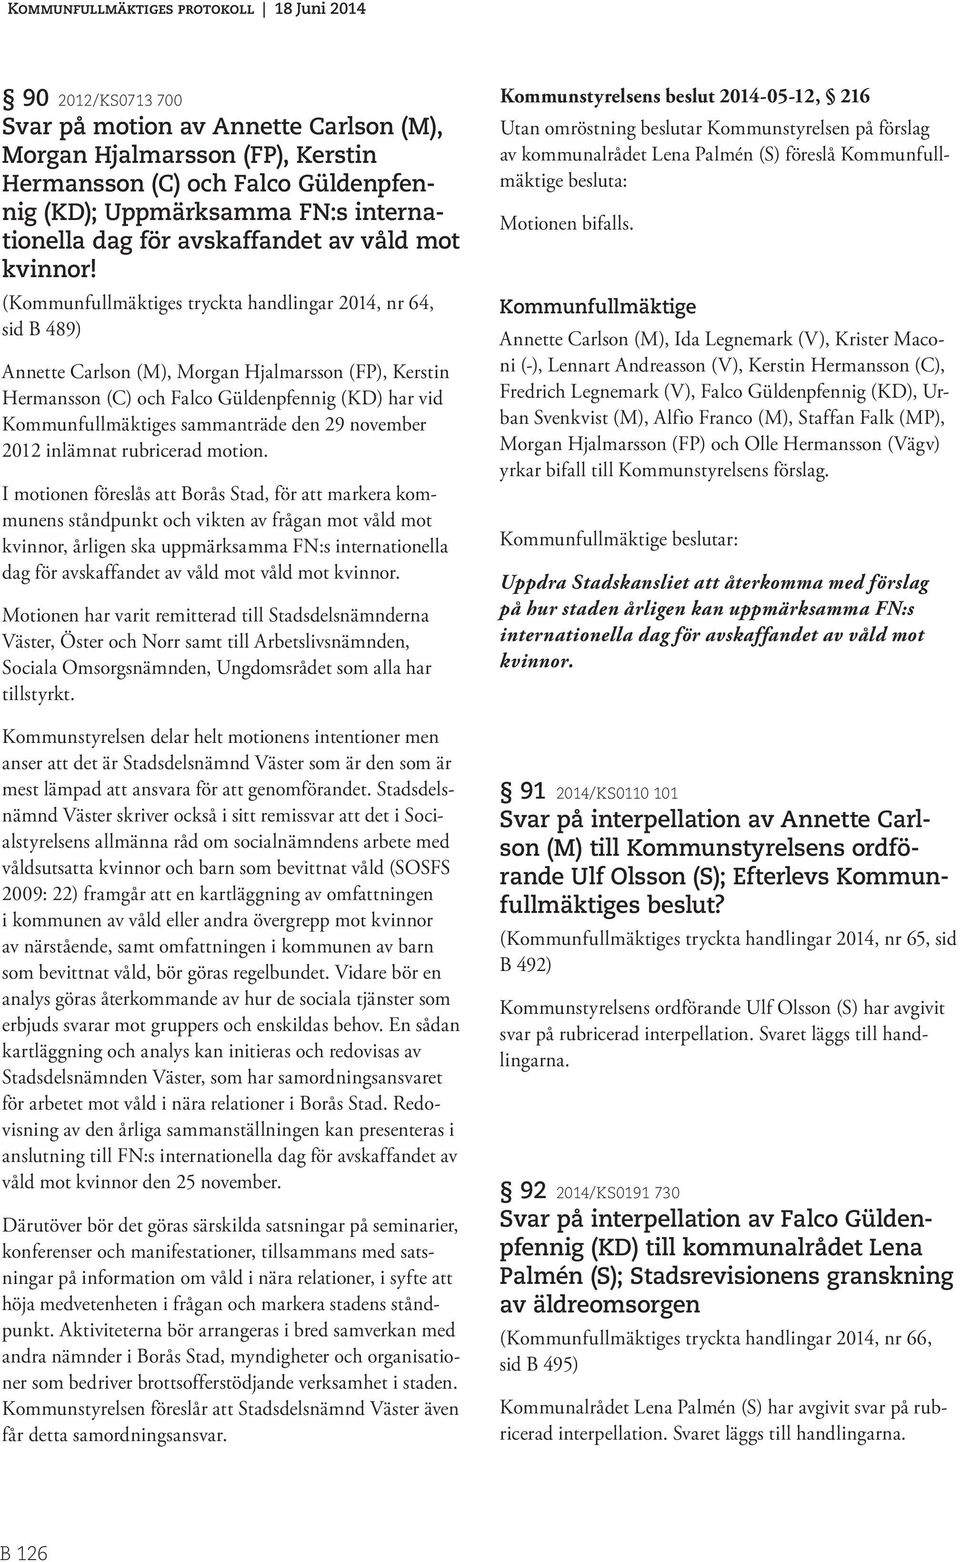 (s tryckta handlingar 2014, nr 64, sid B 489) Annette Carlson (M), Morgan Hjalmarsson (FP), Kerstin Hermansson (C) och Falco Güldenpfennig (KD) har vid s sammanträde den 29 november 2012 inlämnat